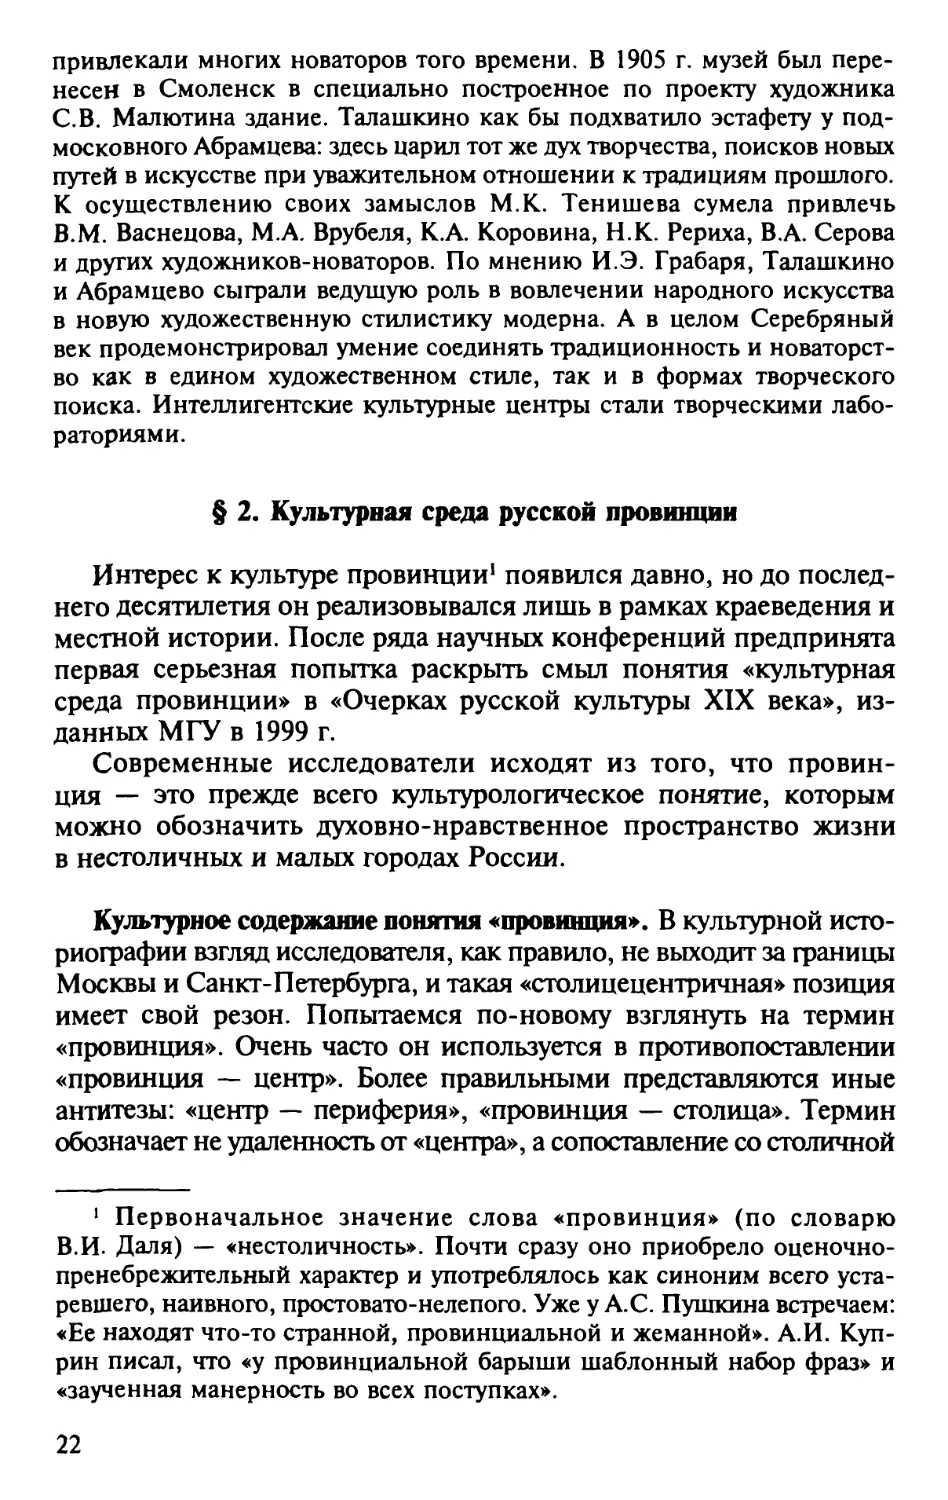 § 2. Культурная среда русской провинции